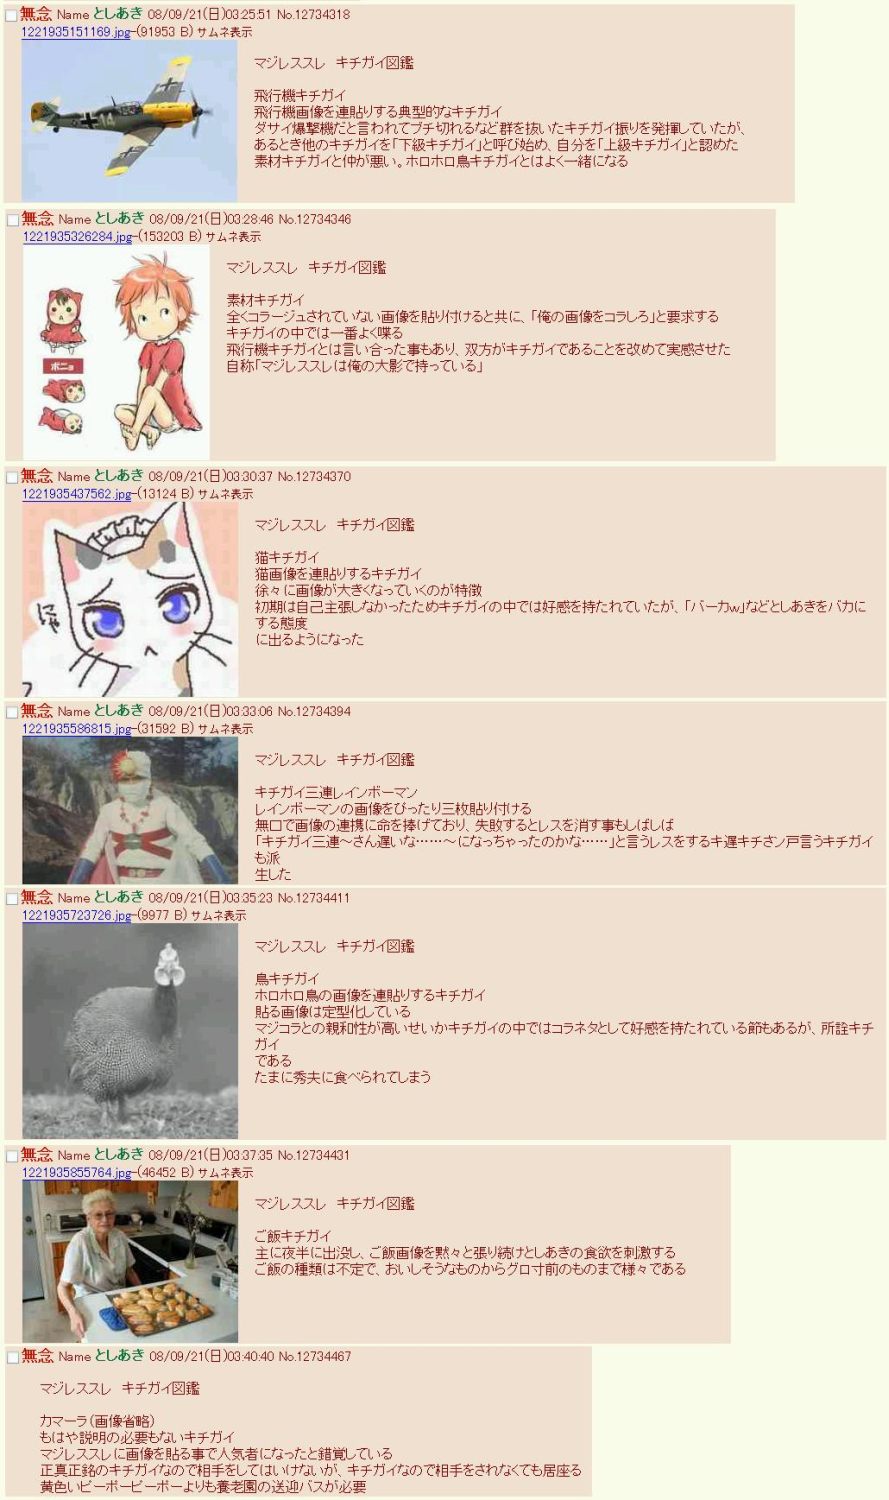 マジレススレ キチガイ図鑑 ほマ新チｗ Wiki